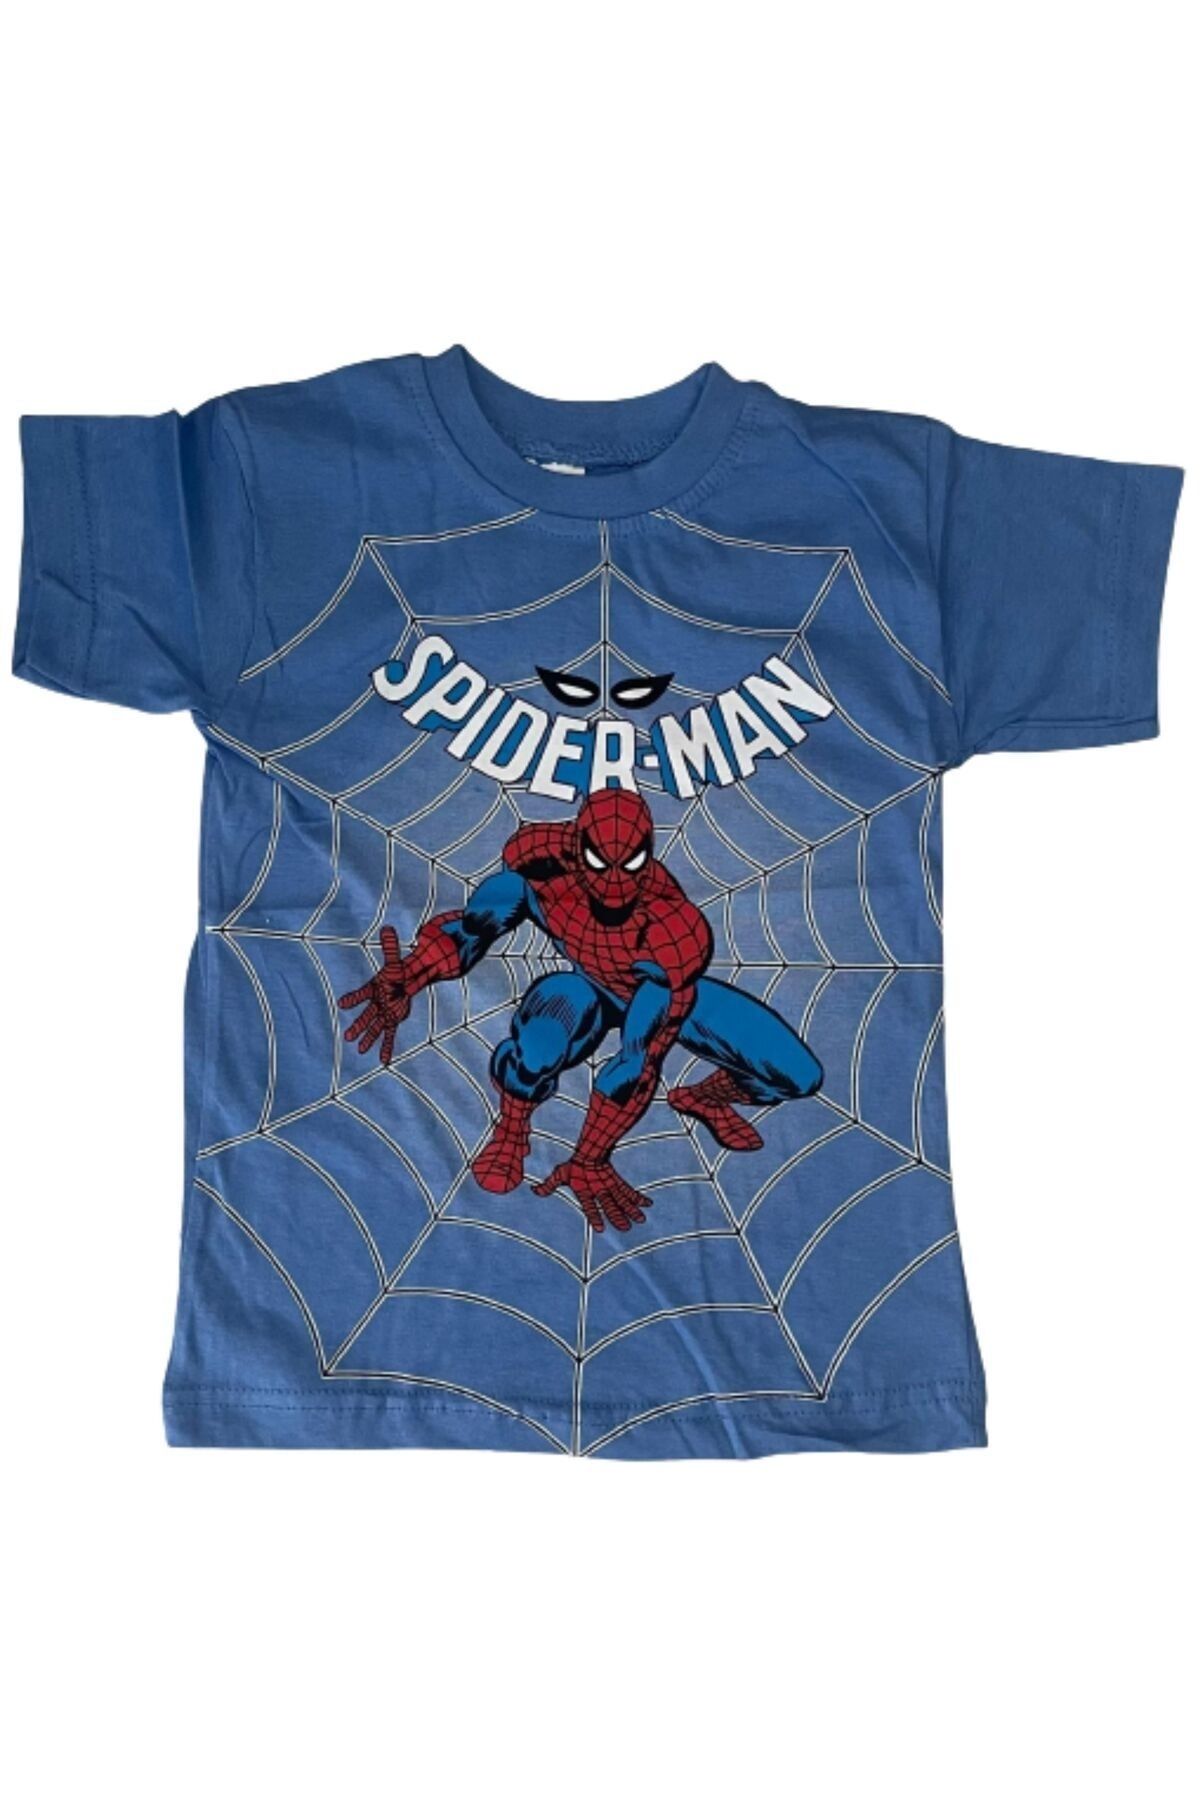 gigigiyim Spiderman Baskılı Erkek Çocuk Tişört